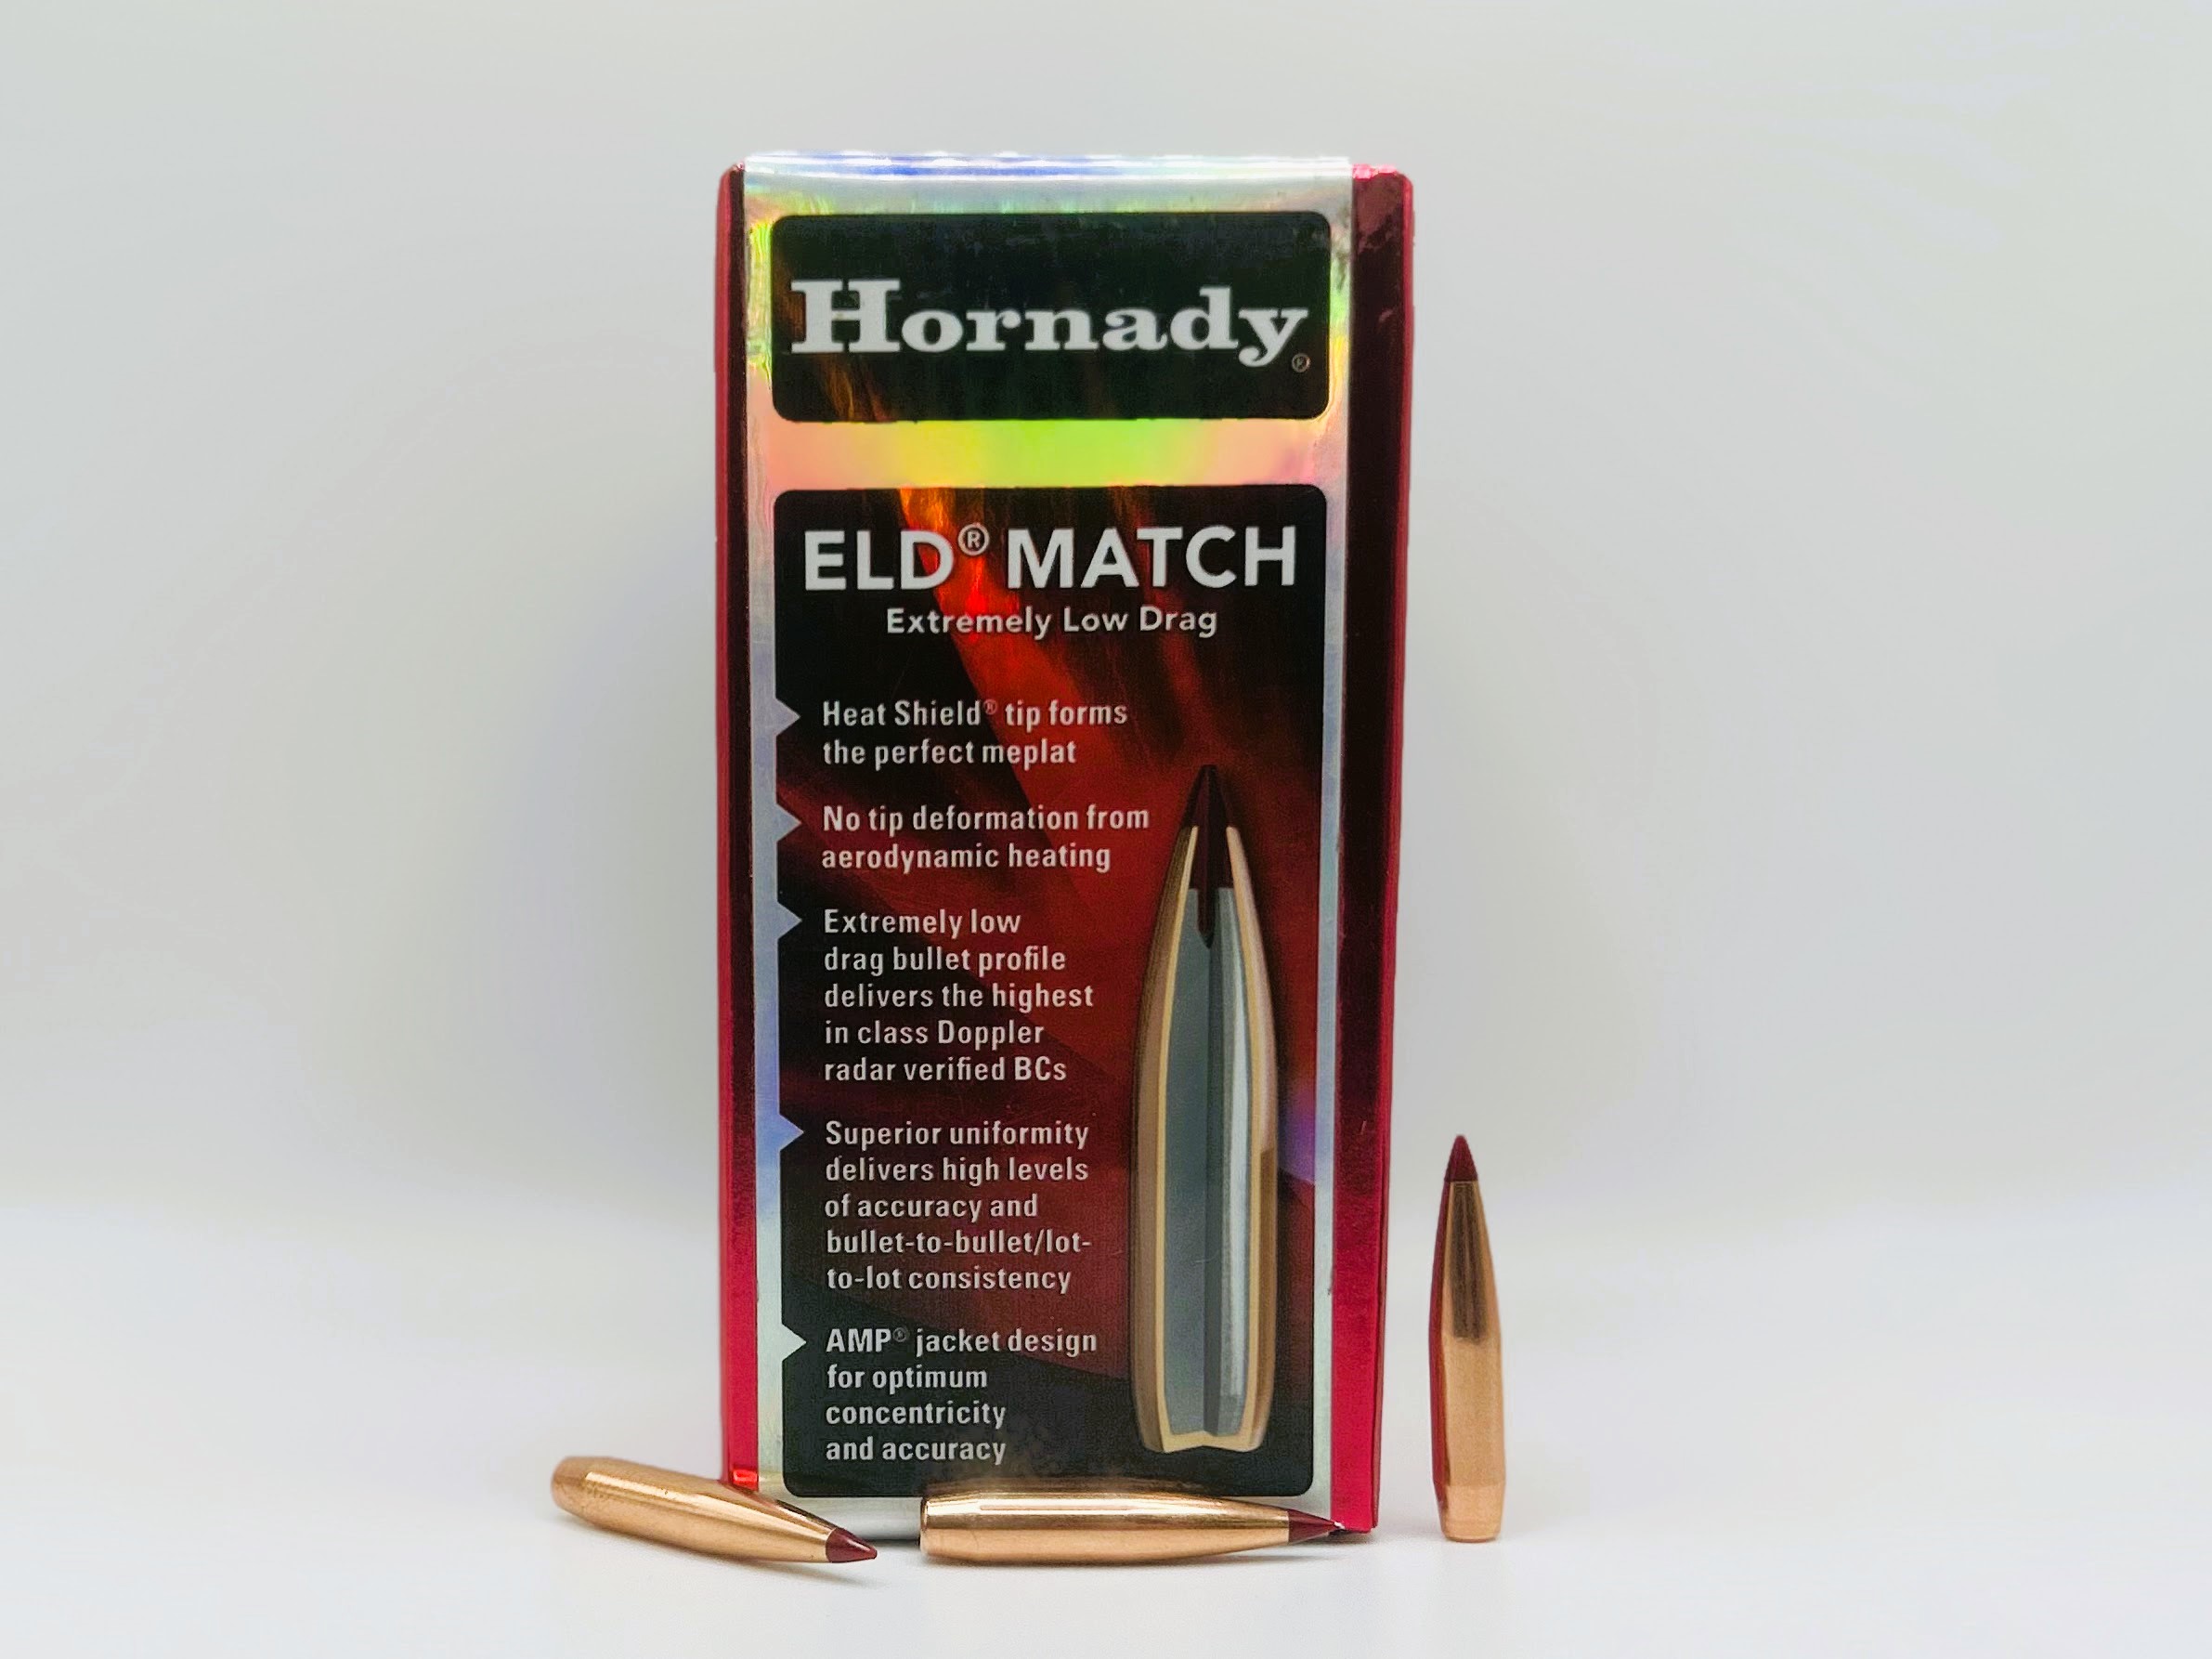 hornady 22cal-88gr-ELD-Match